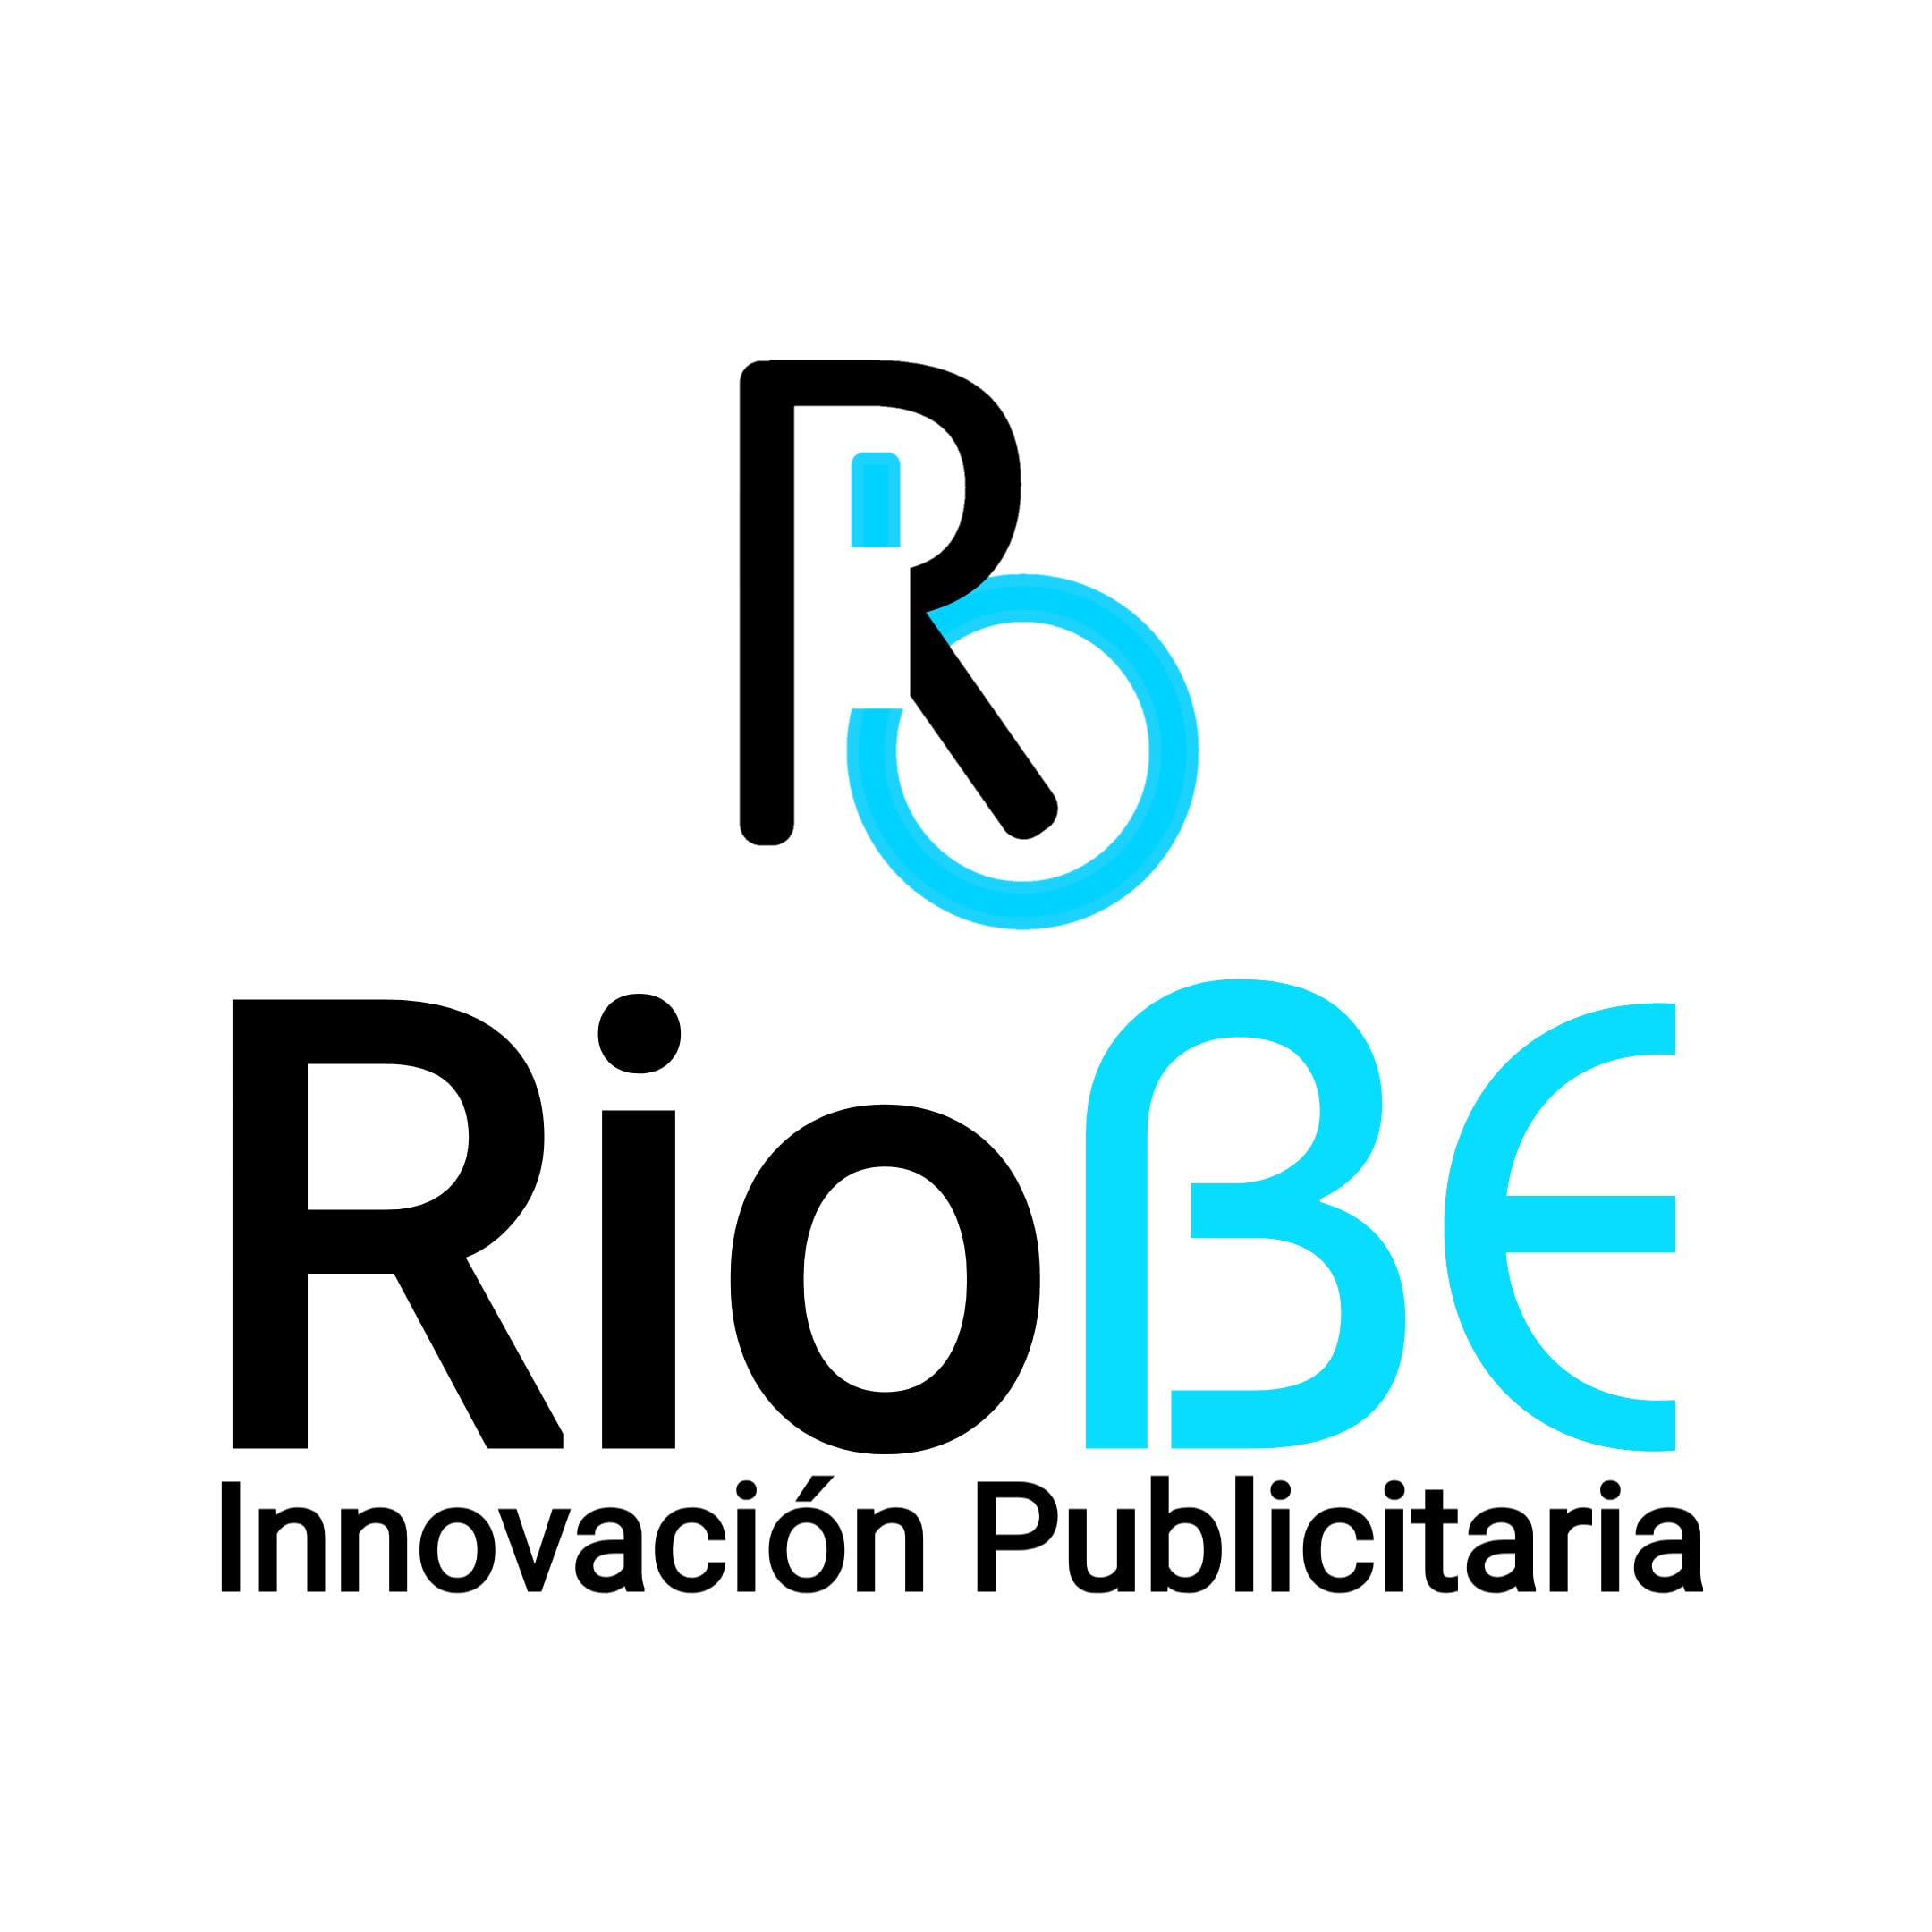 RioBe Innovación Publicitaria